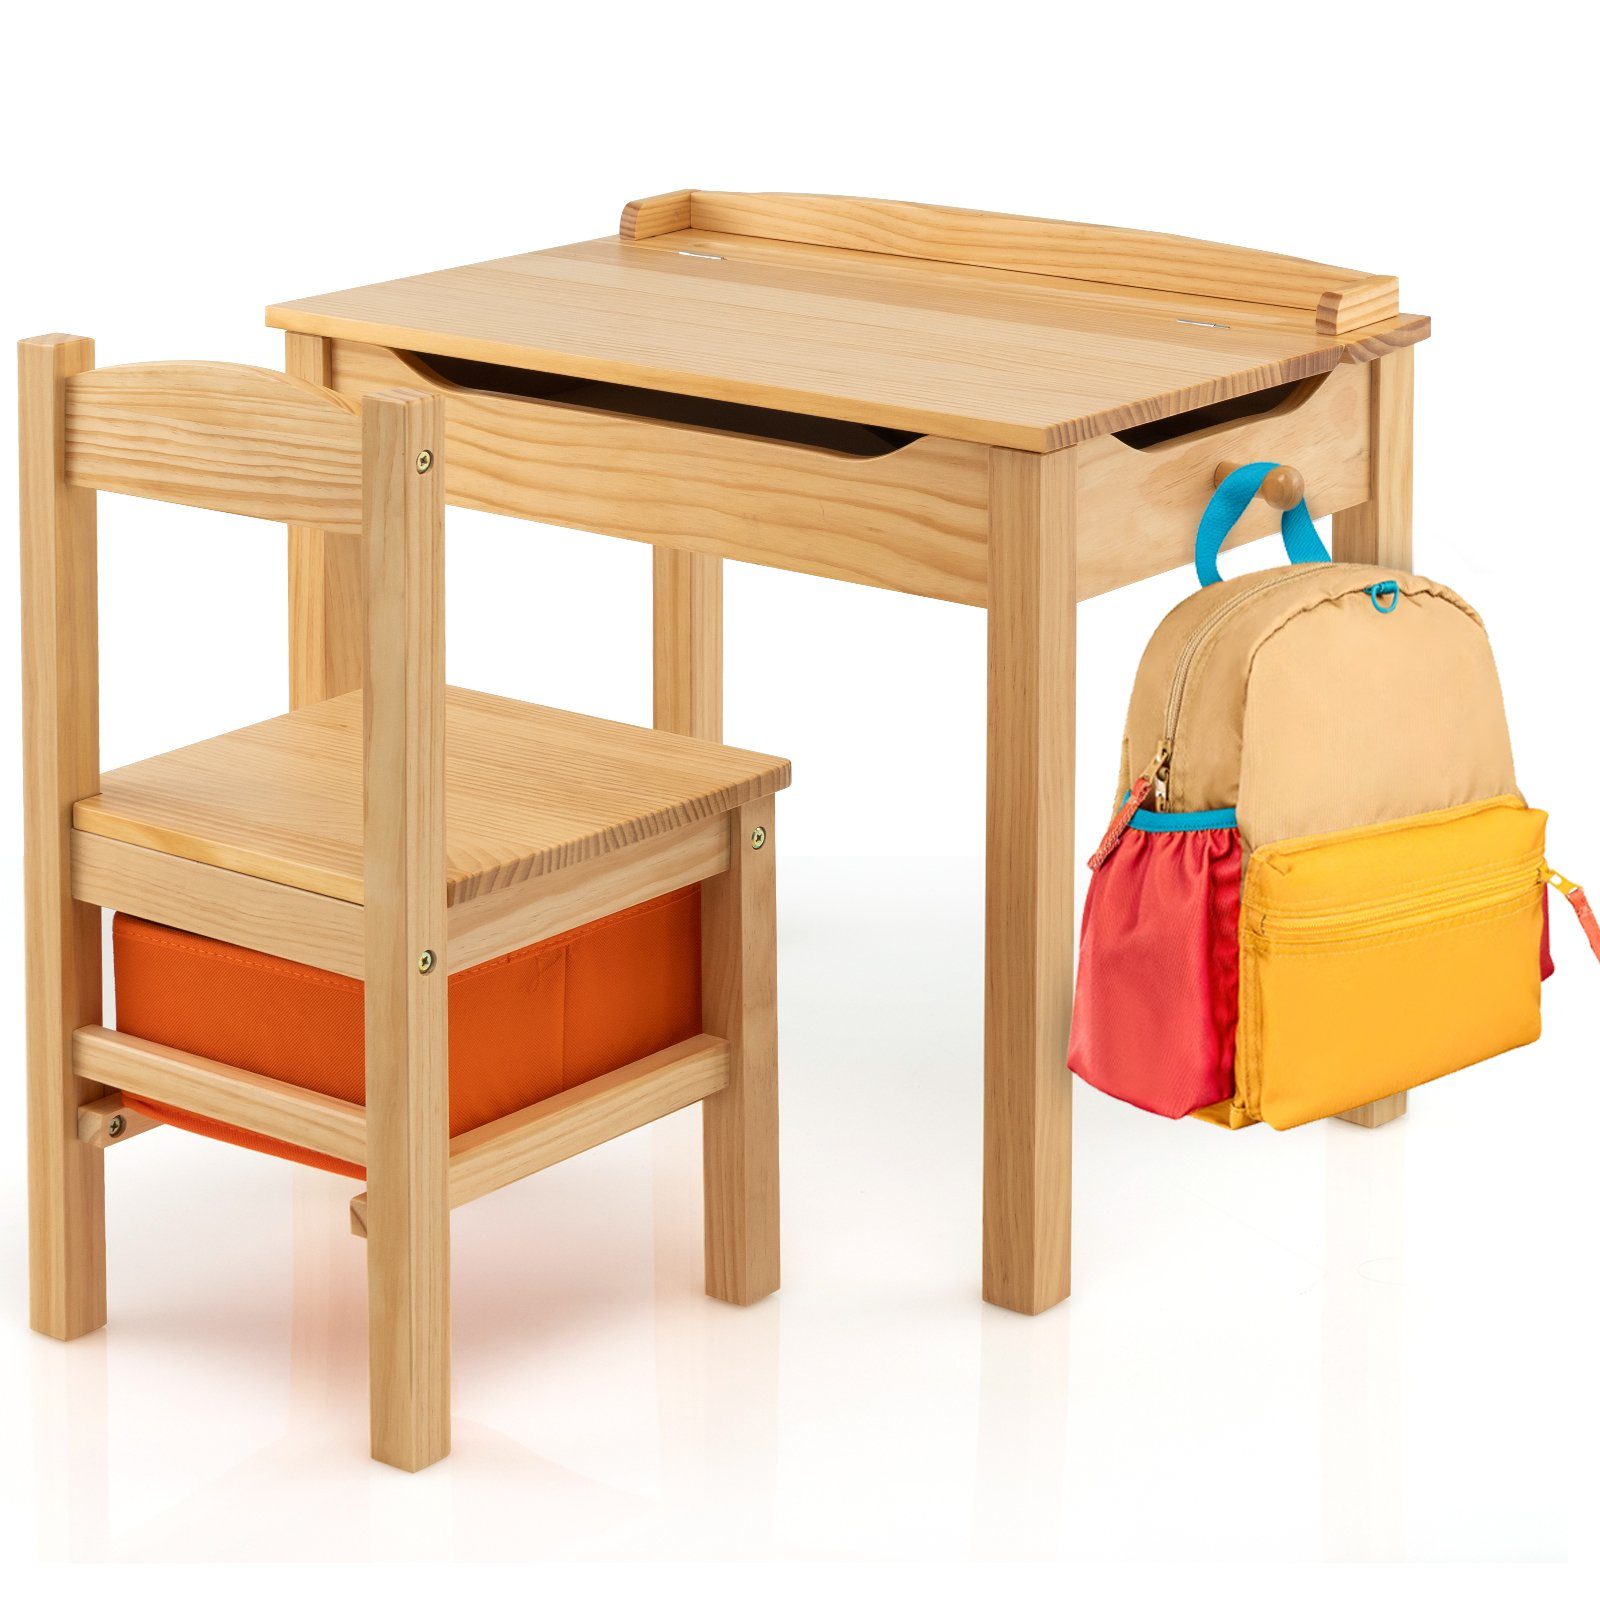 Stuhl, natur mit Kindersitzgruppe Holz, COSTWAY mit Kindertisch Stauraum aus